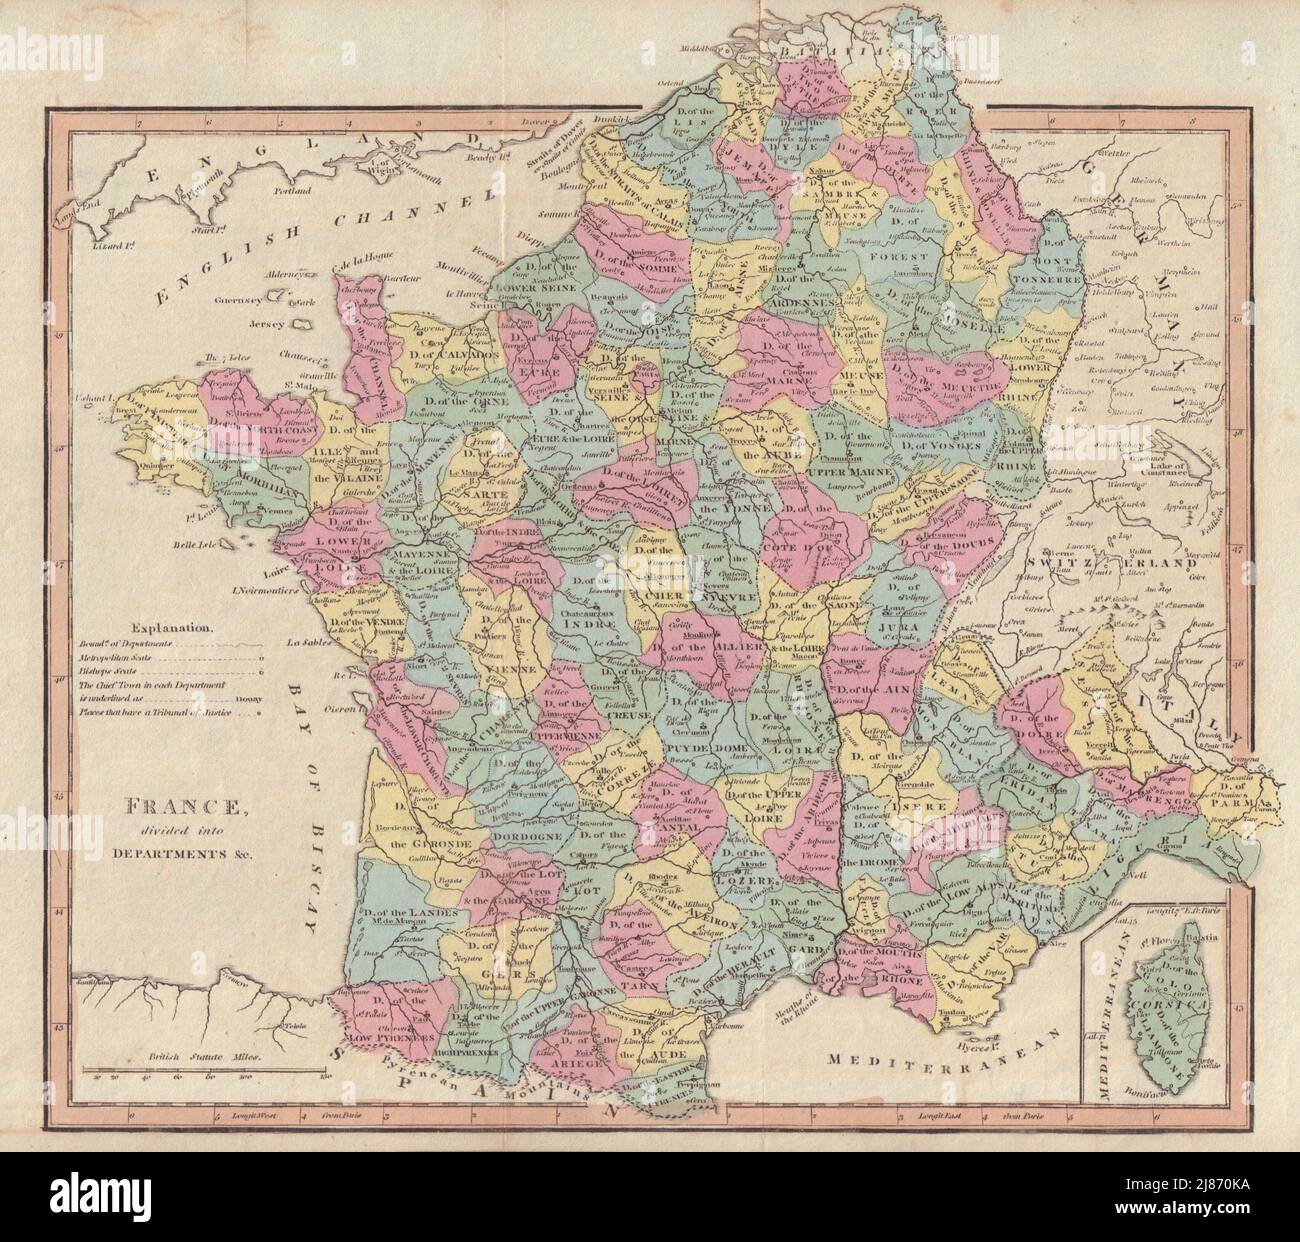 Francia divisa in Dipartimenti. Primo impero/Repubblica francese. MAPPA DI COOKE 1817 Foto Stock